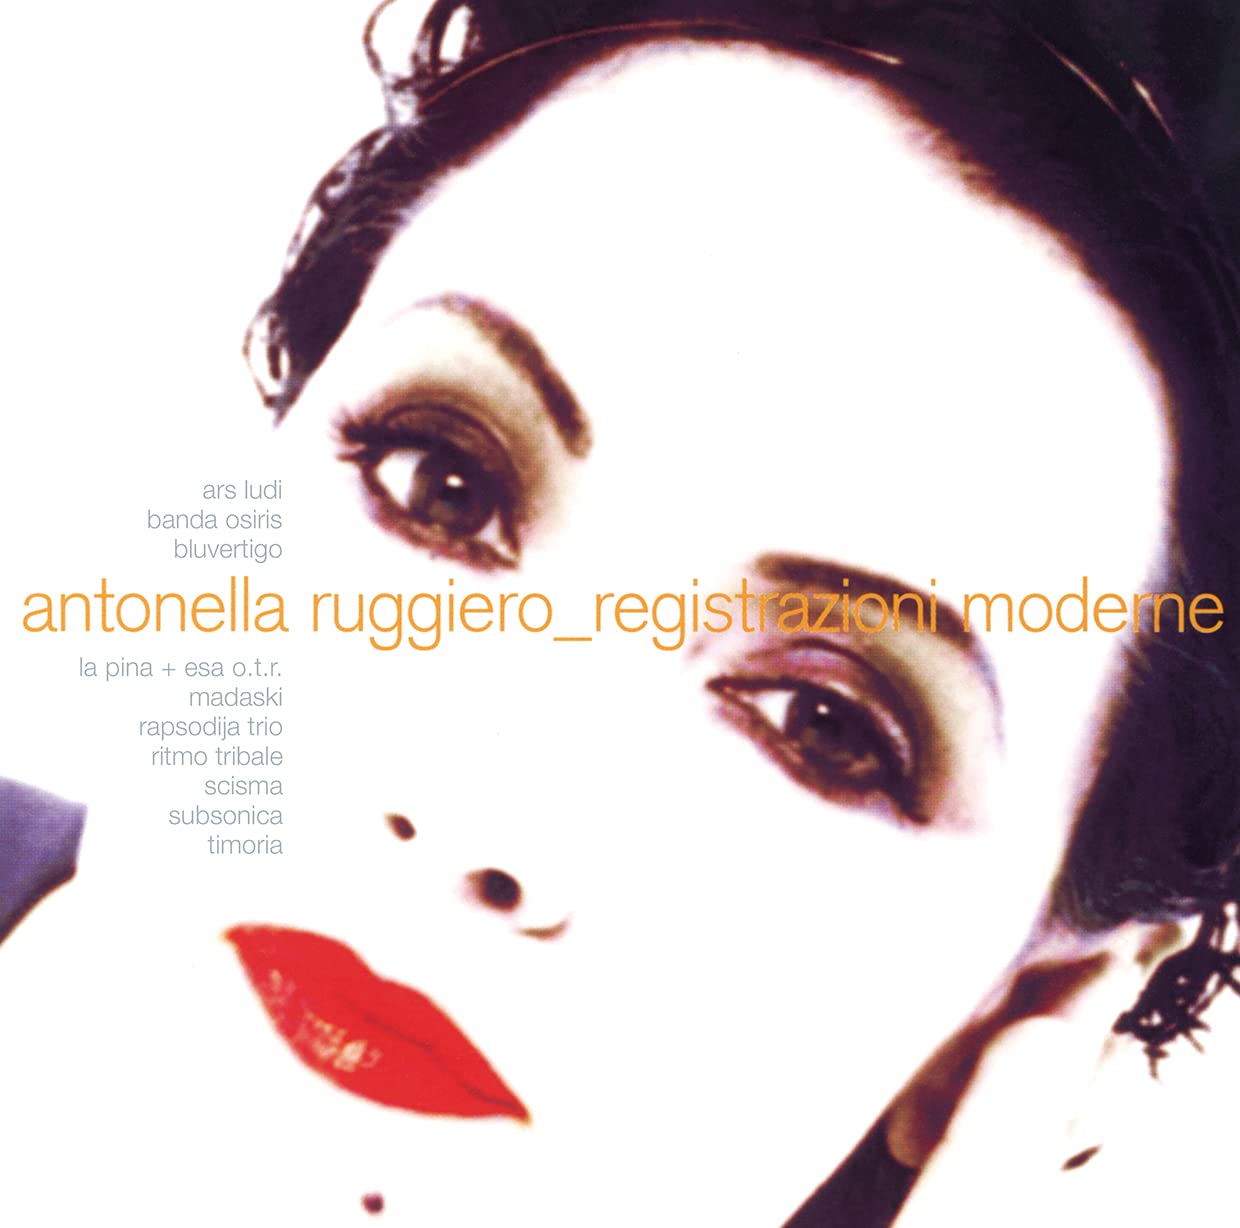 Vinile Antonella Ruggiero - Registrazioni Moderne (2 Lp) NUOVO SIGILLATO, EDIZIONE DEL 11/11/2022 SUBITO DISPONIBILE